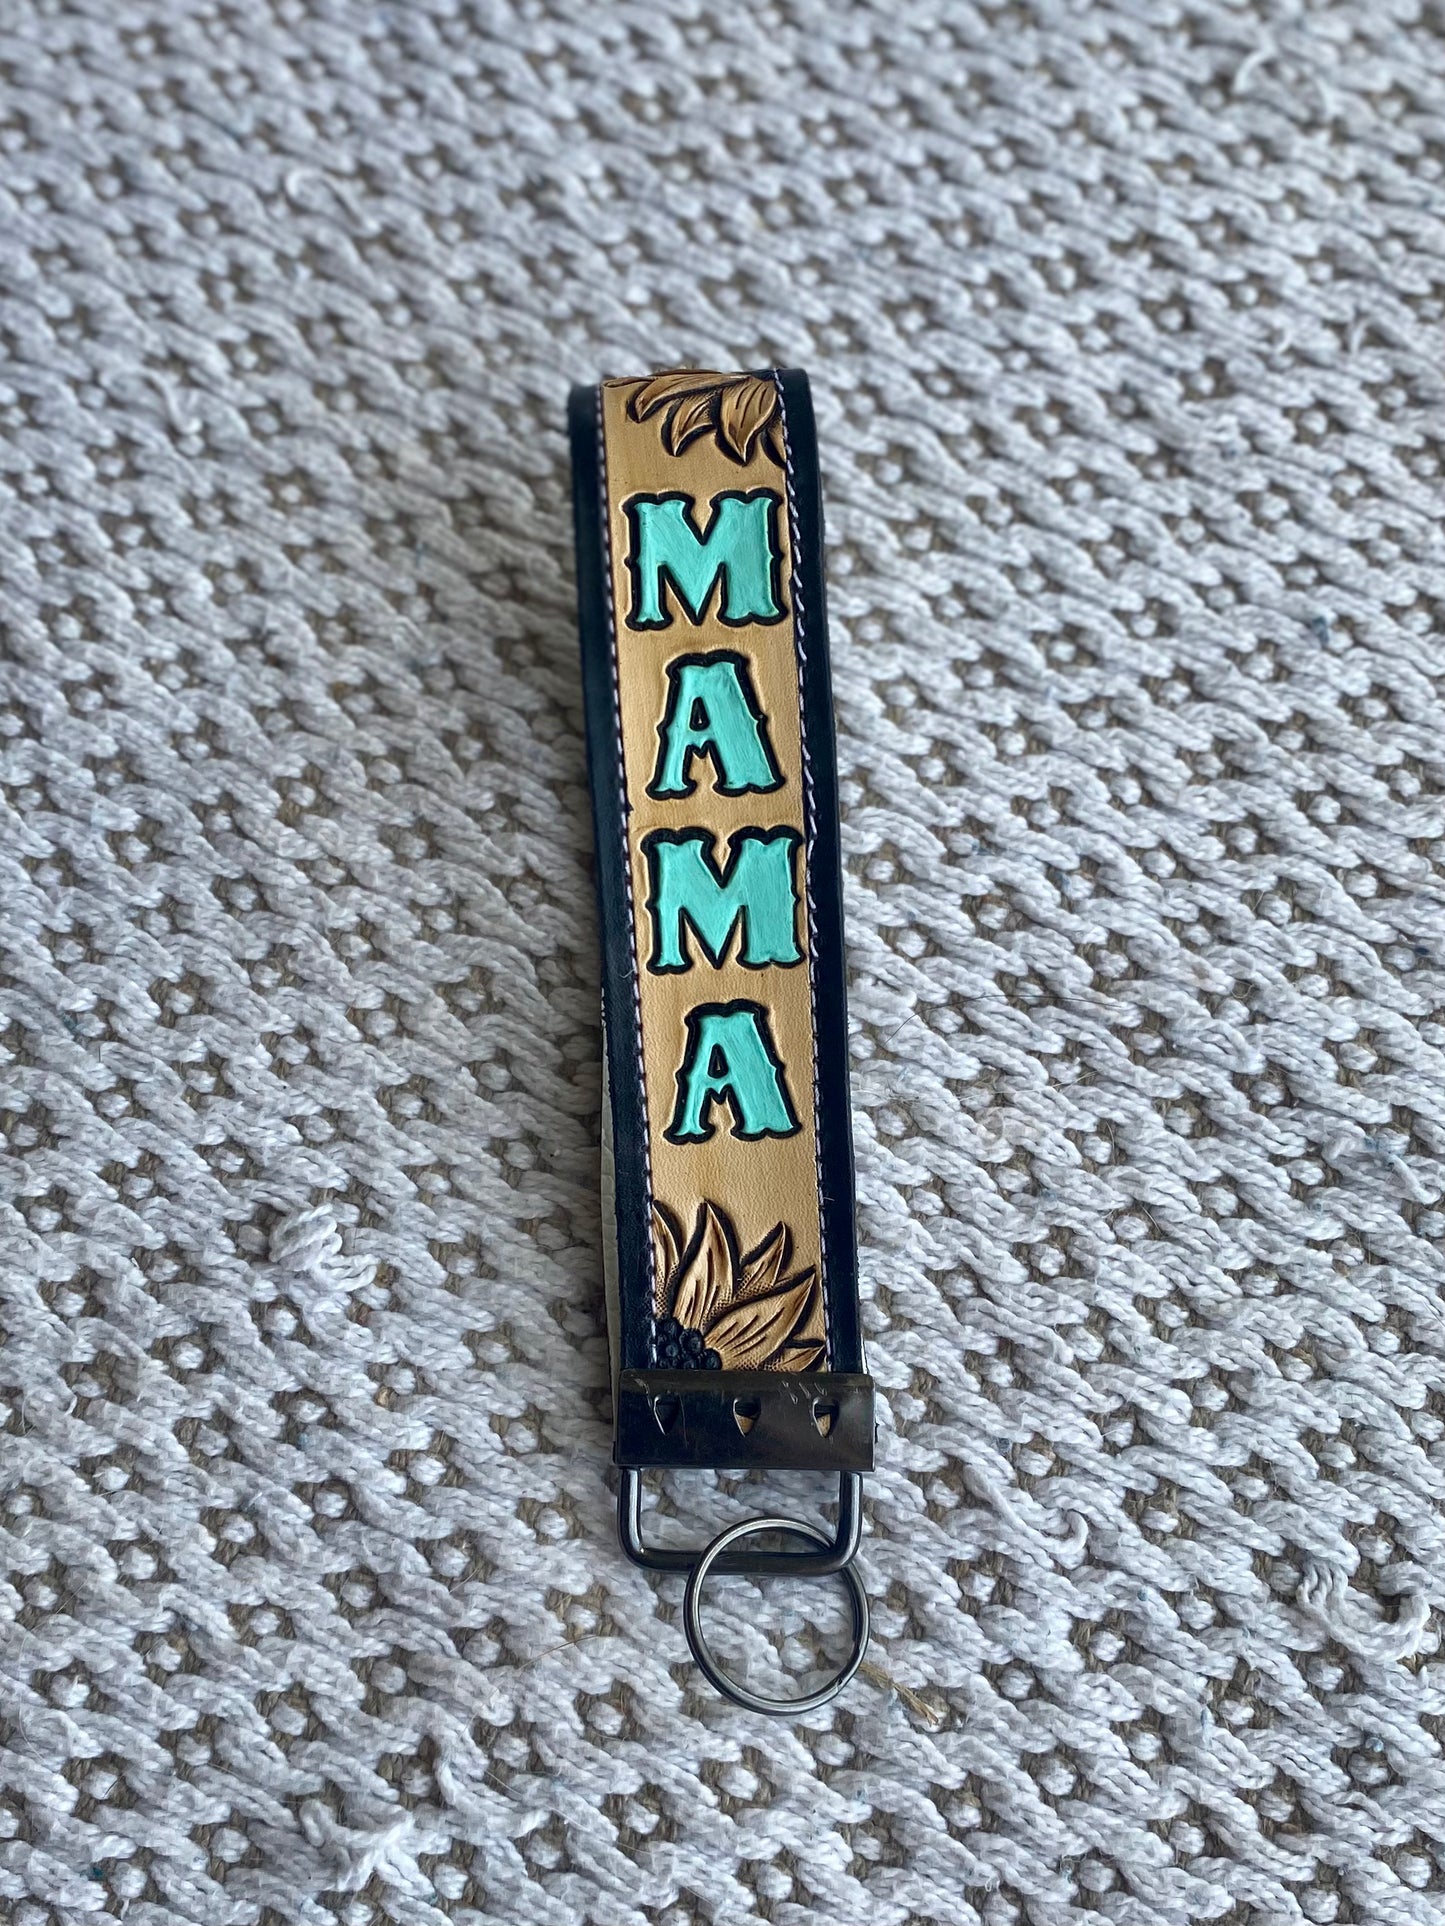 MAMA Wrist Wrap Keychains